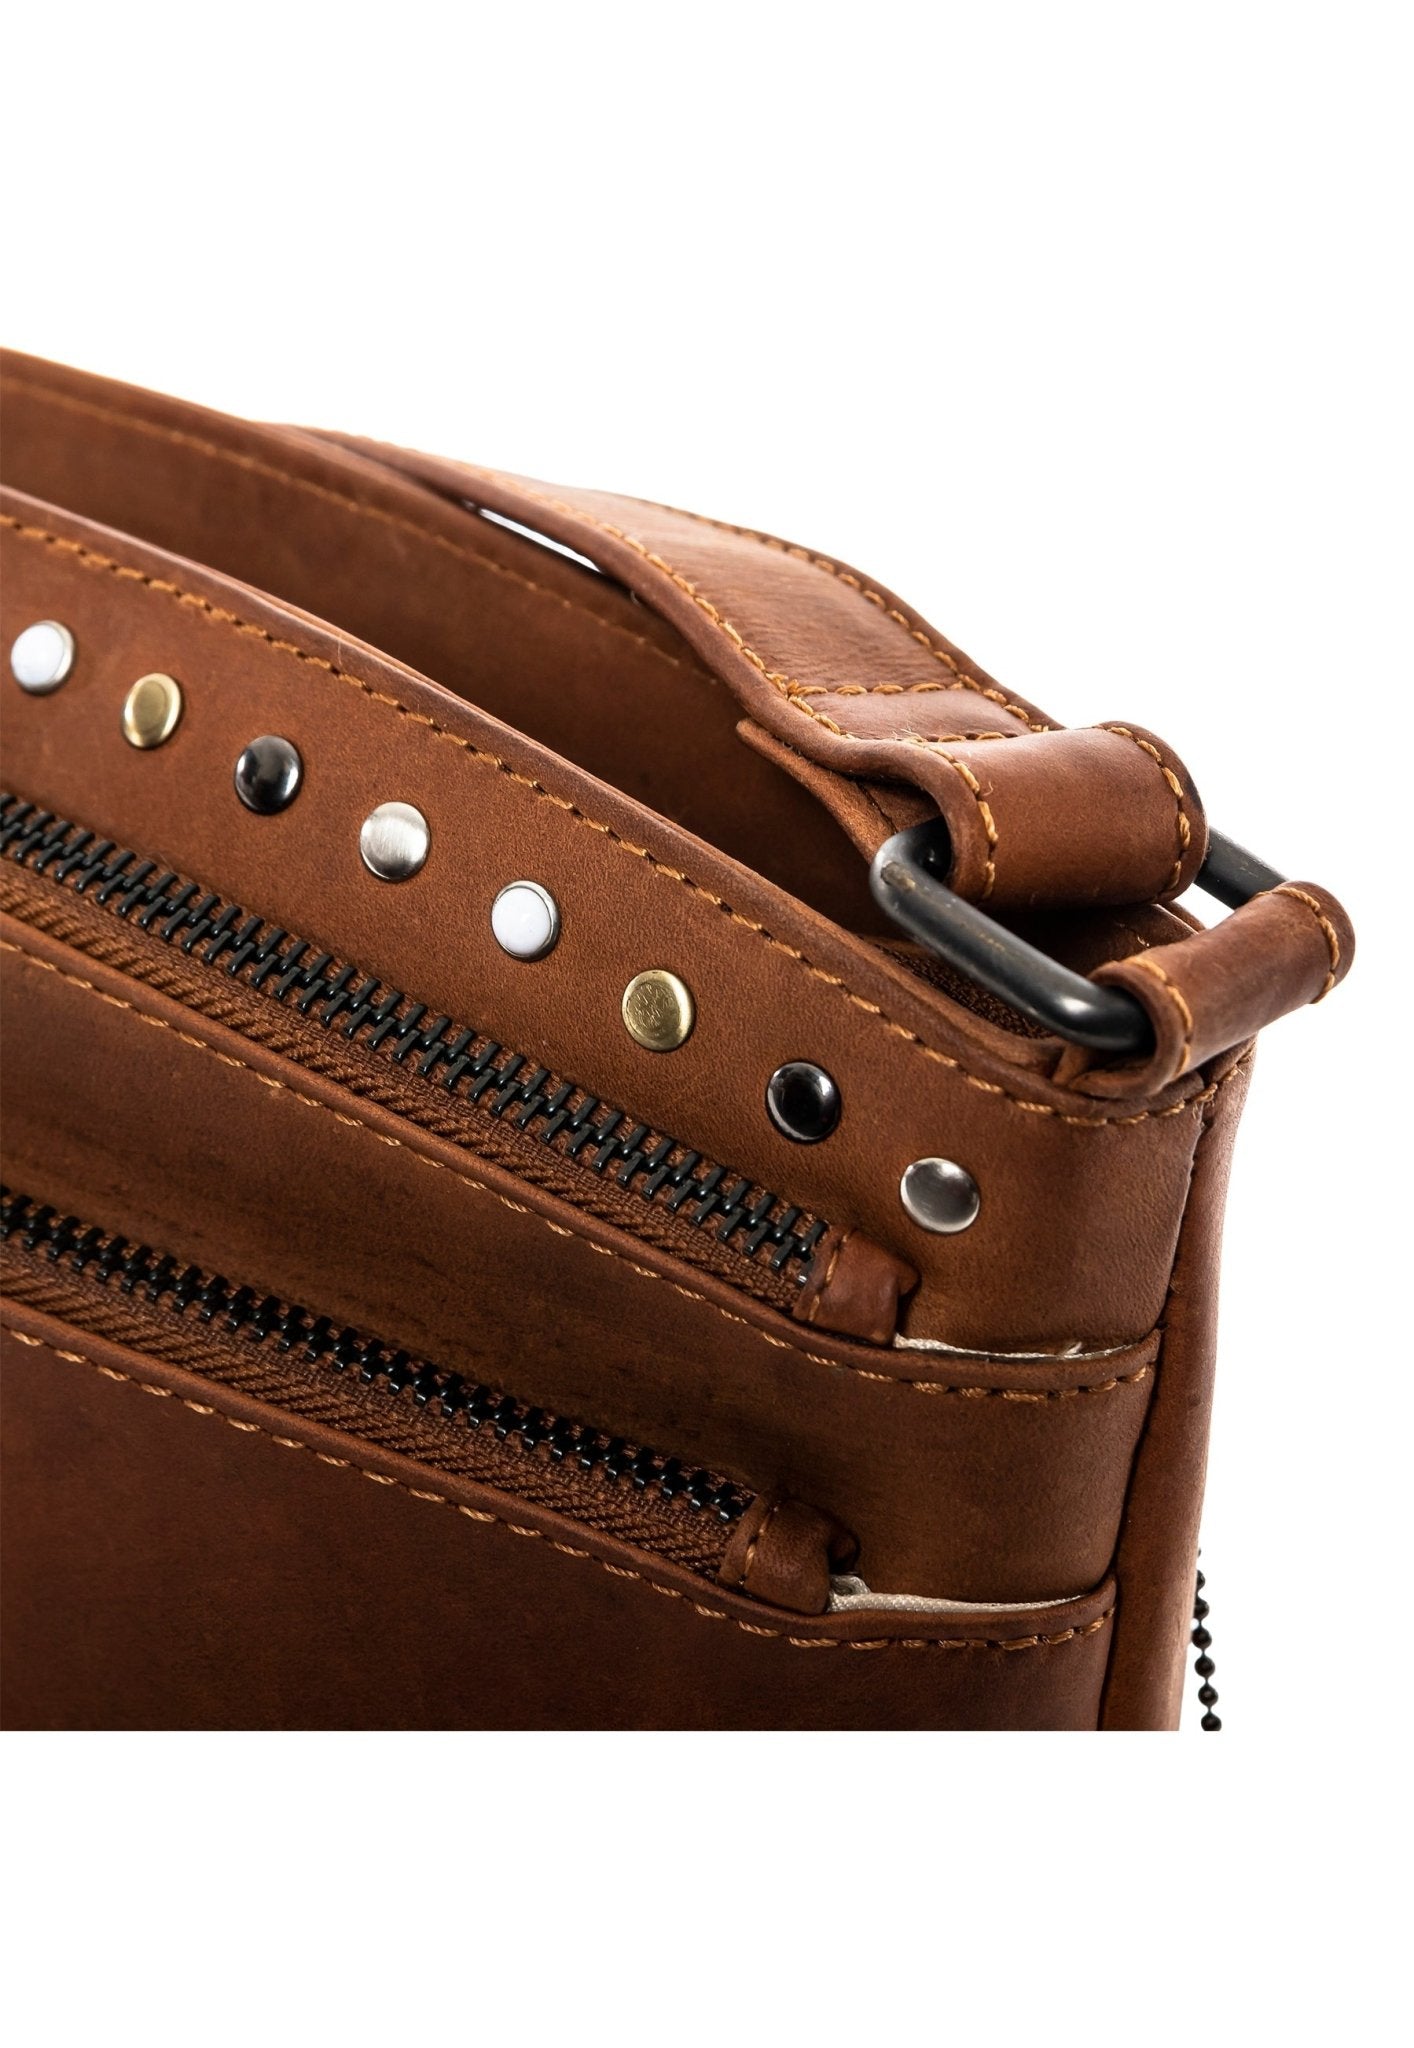 Brynn leather crossbody concealed carry purse - ArmedAF